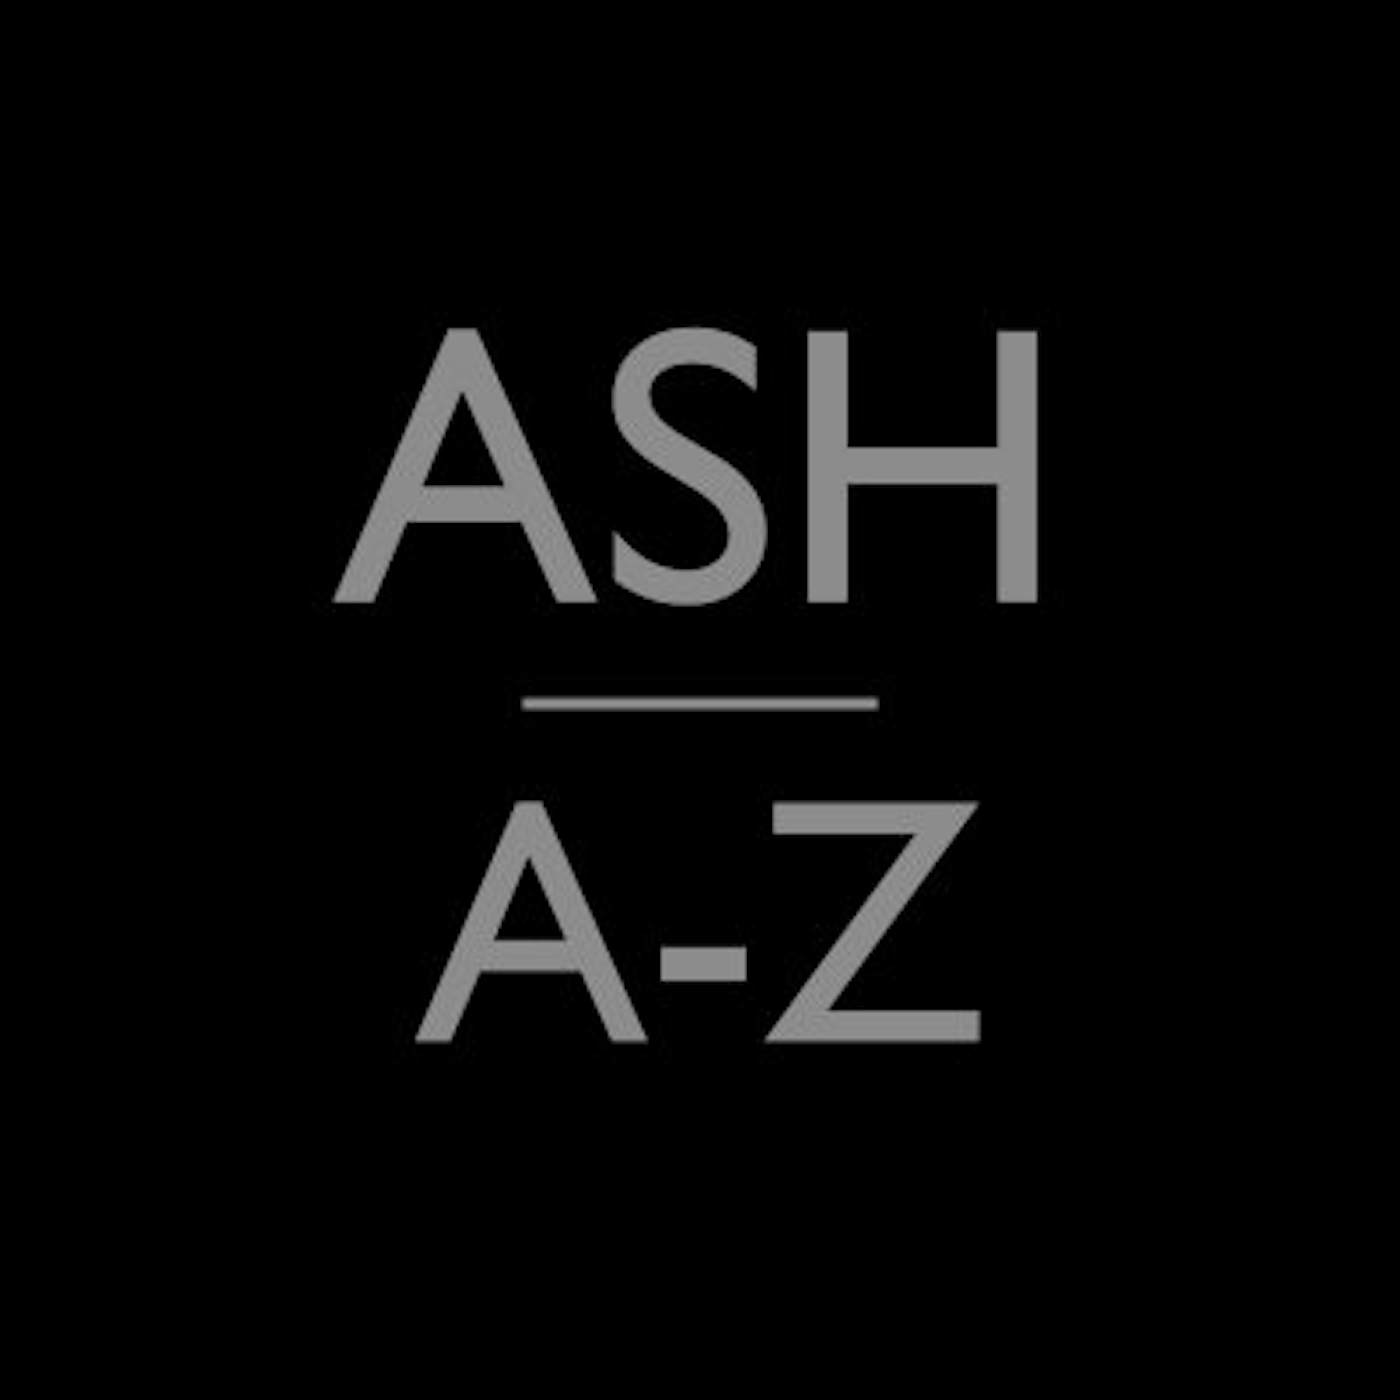 Ash A-Z SERIES Vinyl Record